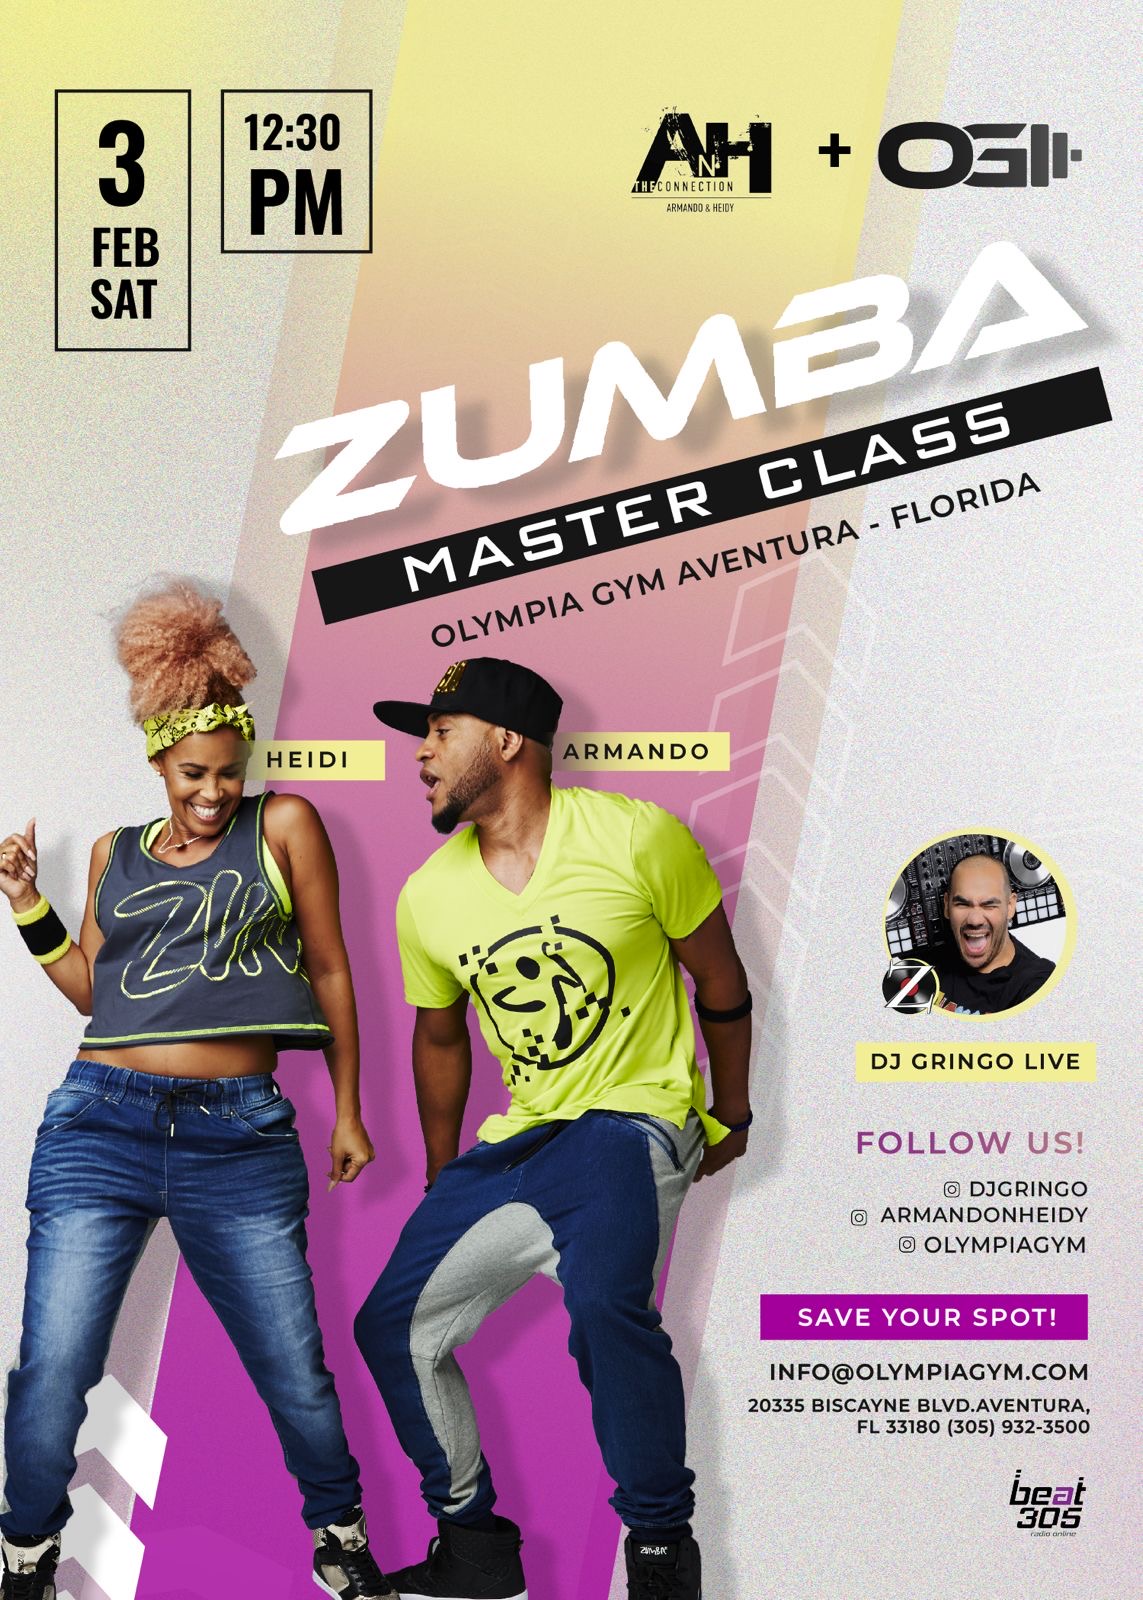 Zumba Masters Class